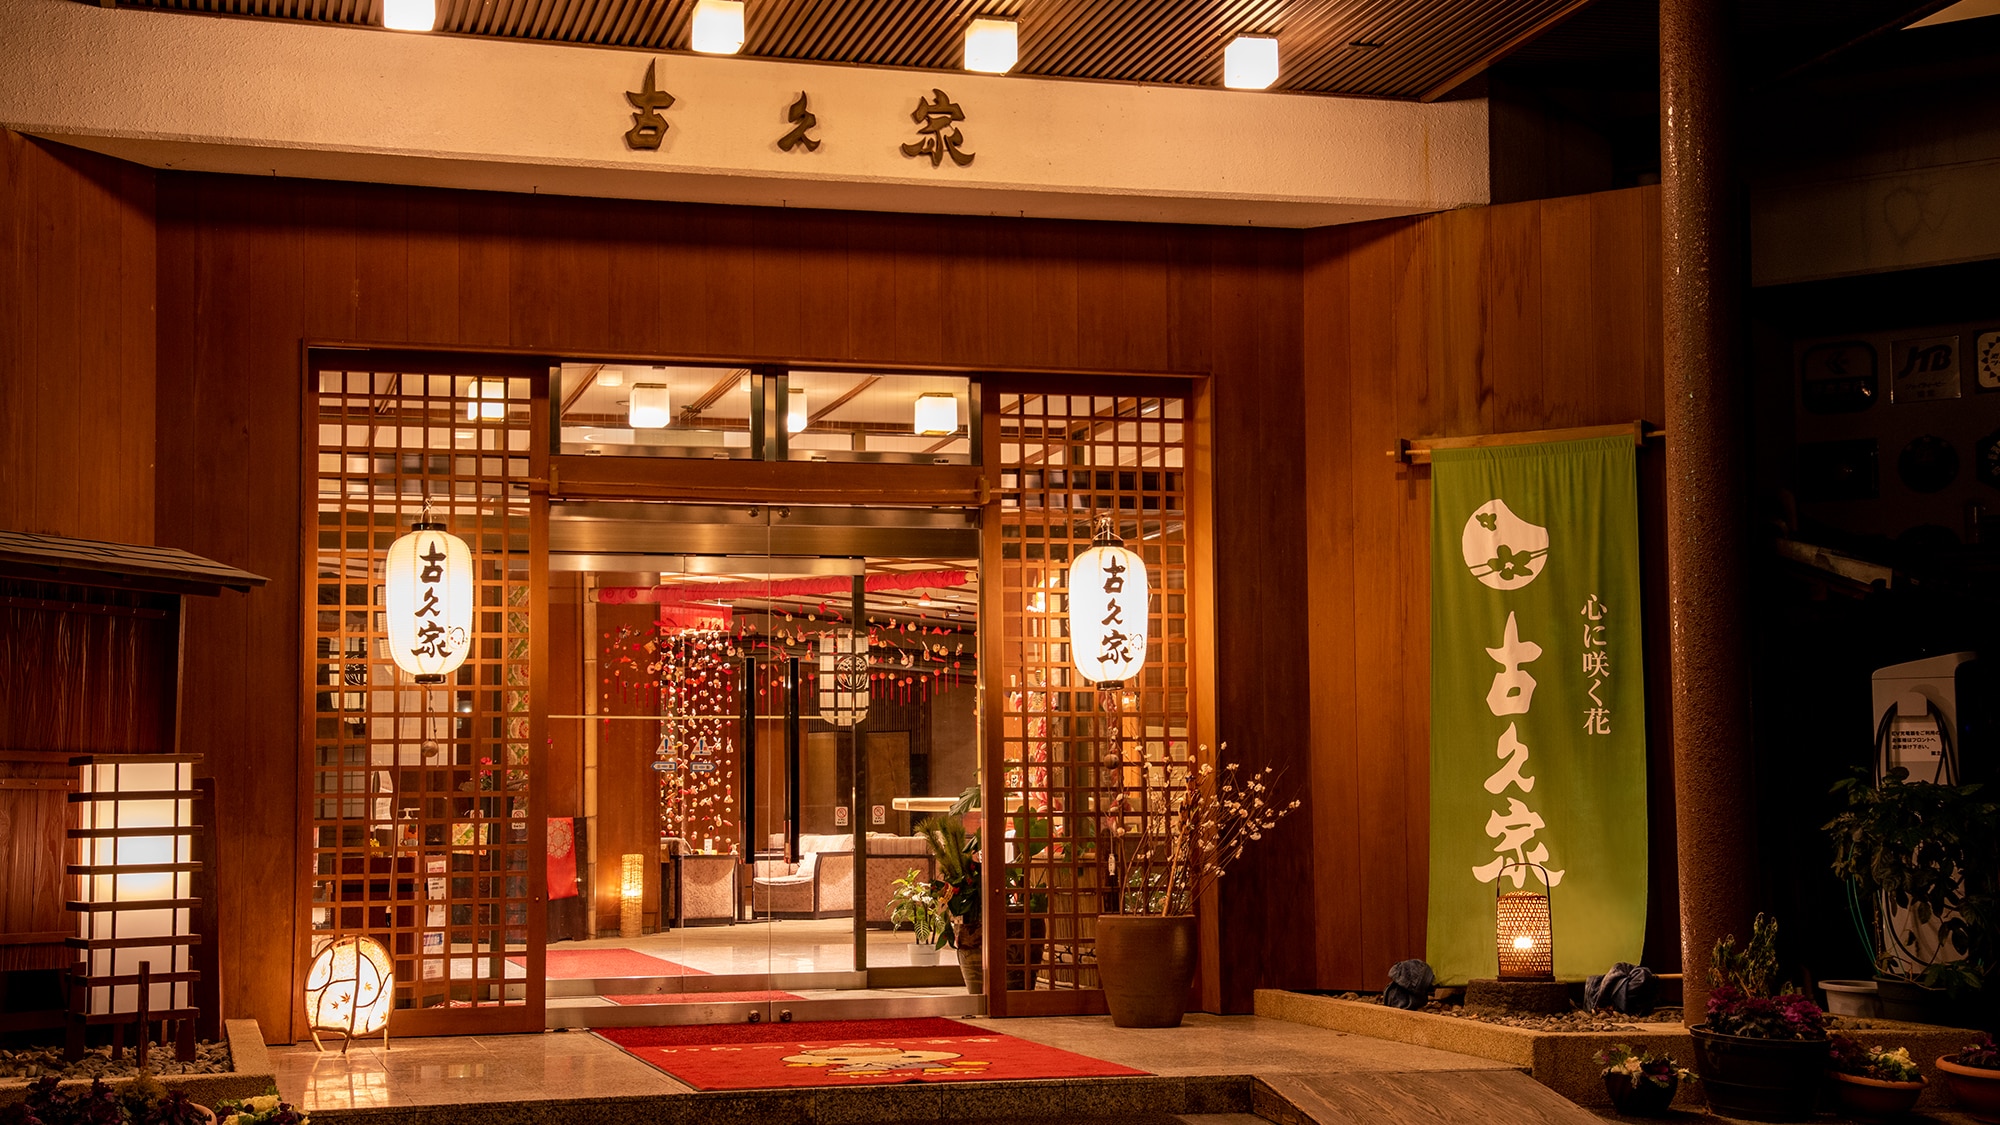 * 伊香保溫泉是創業100年的老字號旅館。